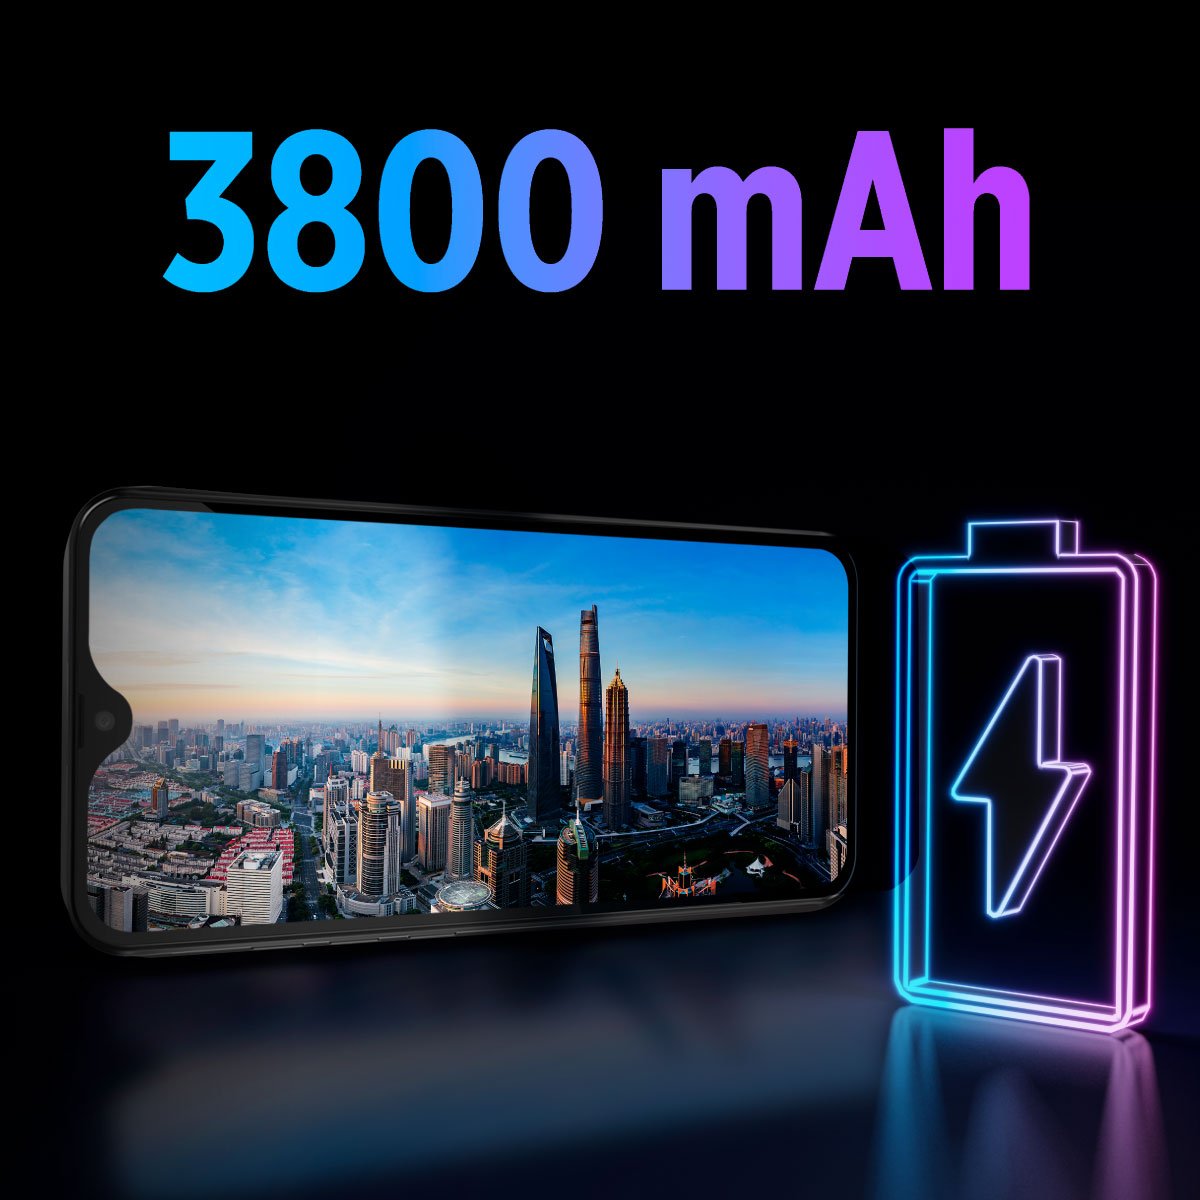 Yüksek Batarya, Kesintisiz kullanım   P13 Blue 2022 3800 mAh batarya kapasitesi ile her zaman seninle!